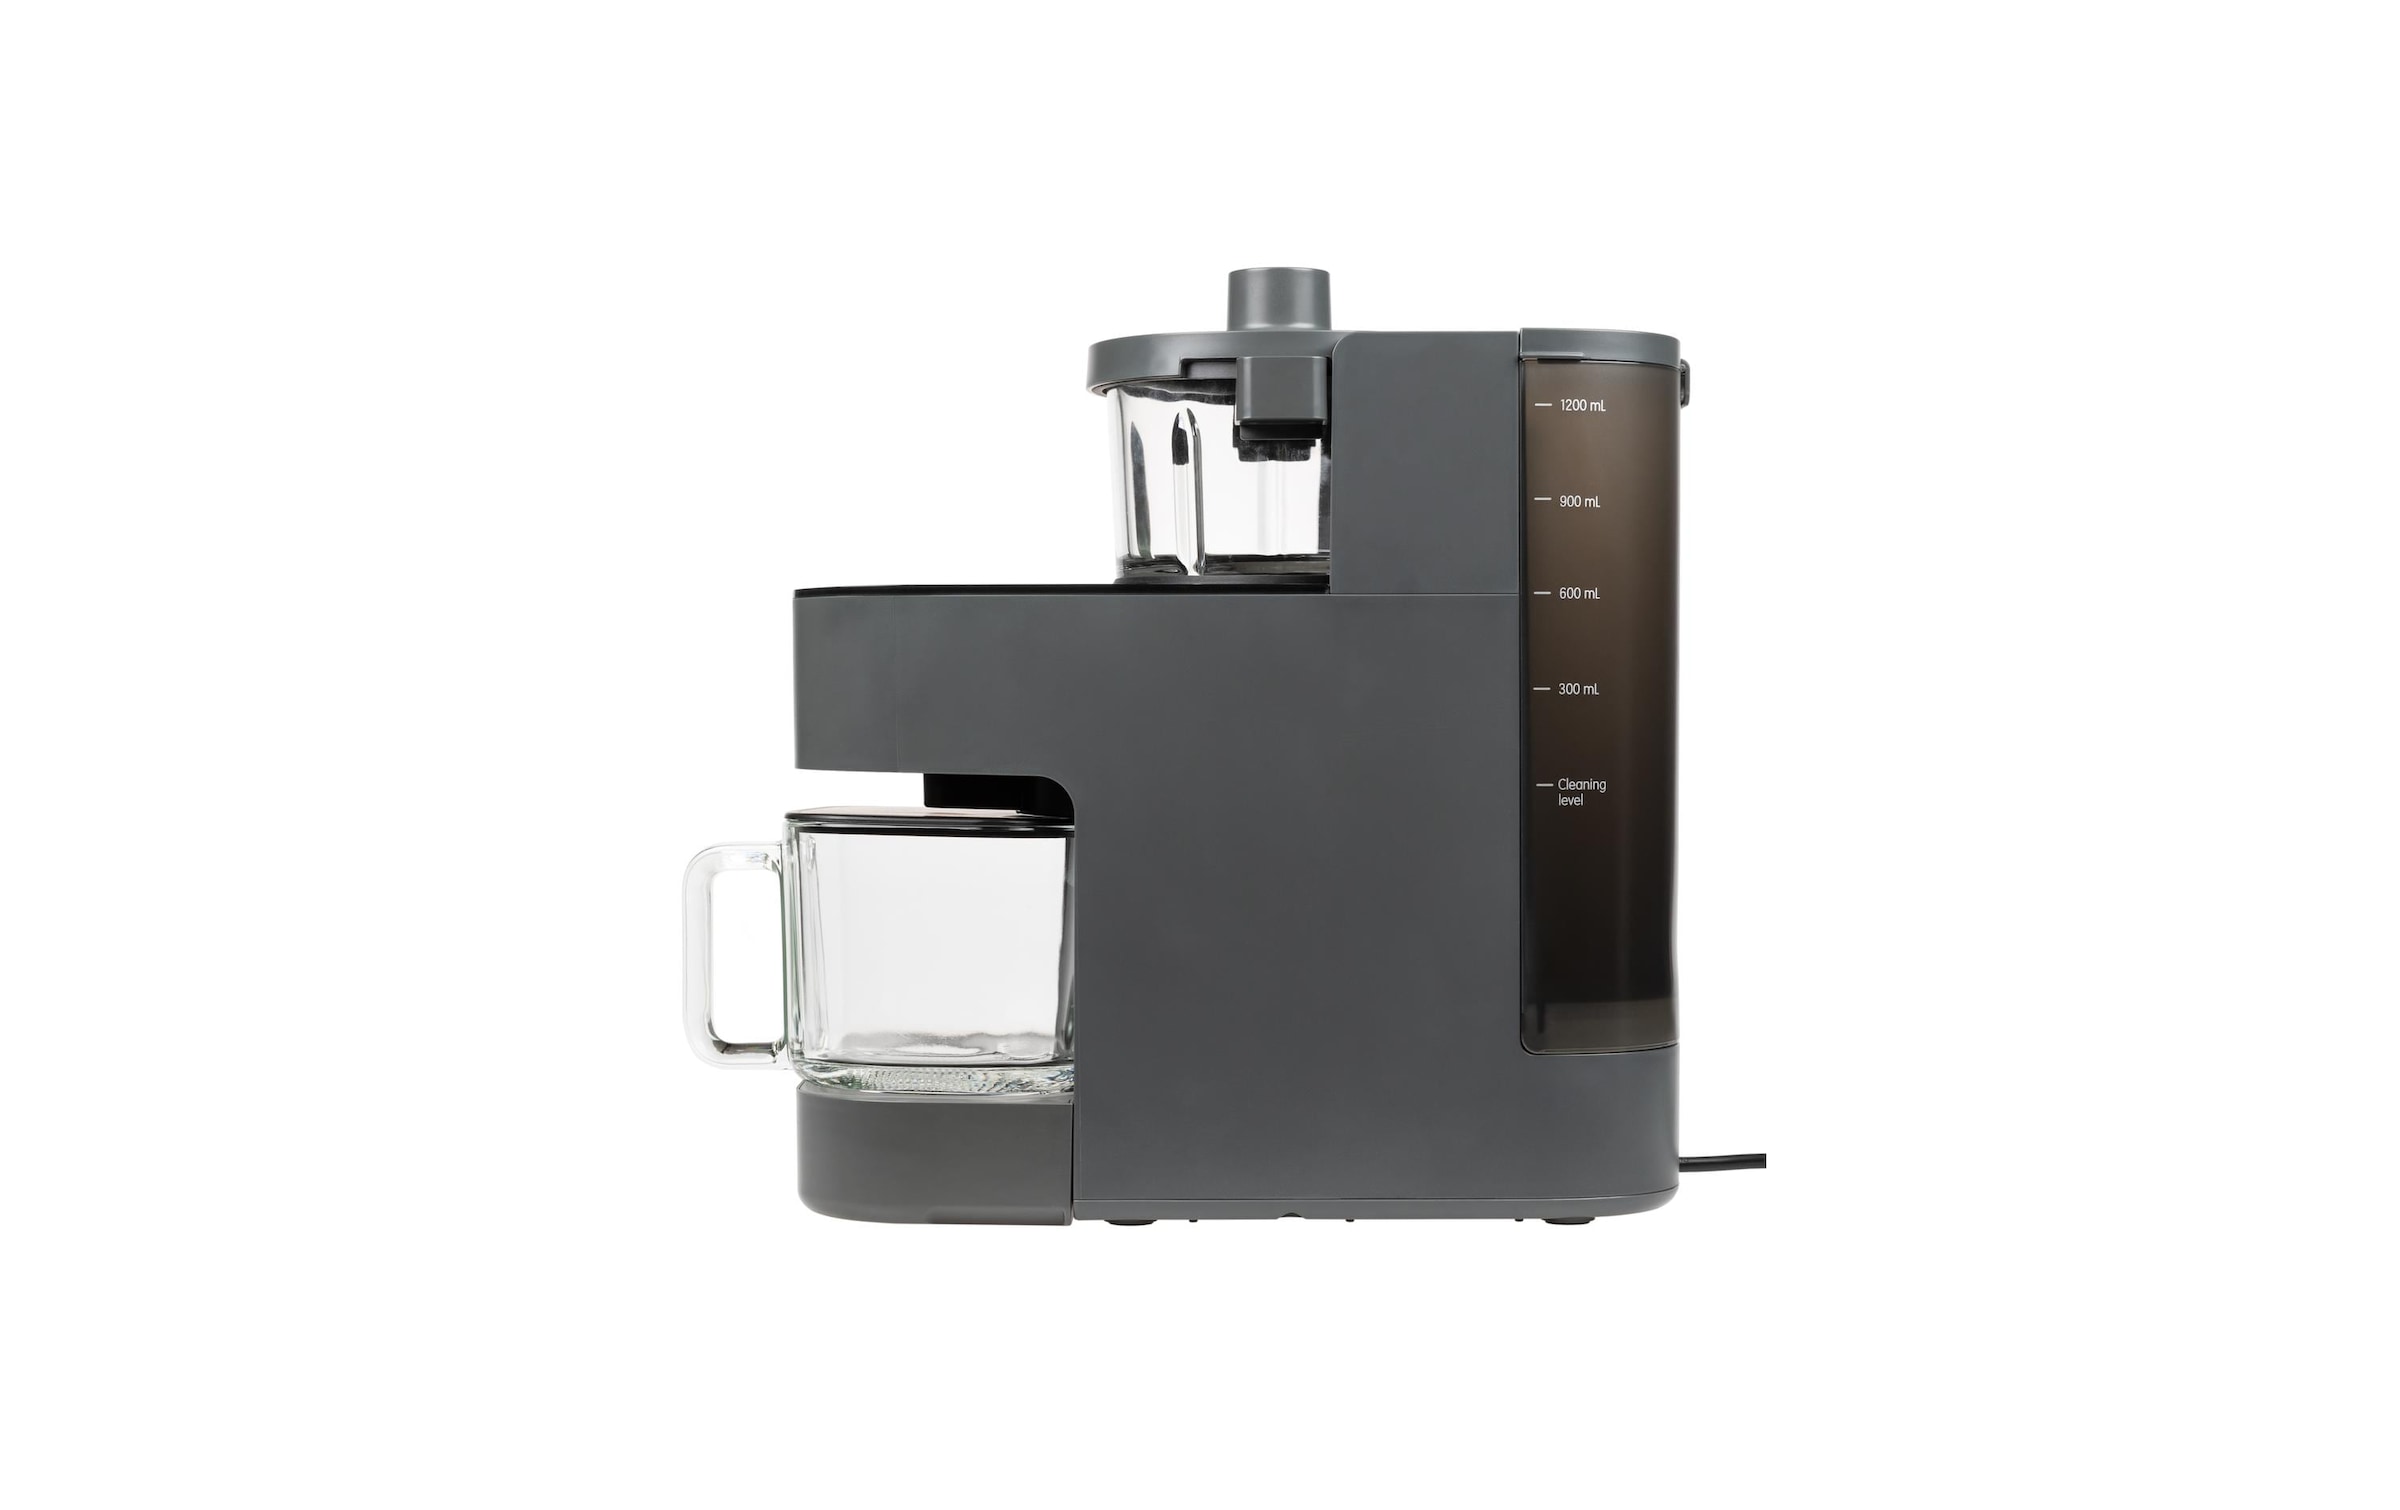 FURBER Küchenmaschine »Pflanzenmilchmaschine Vega Pro 44958 L«